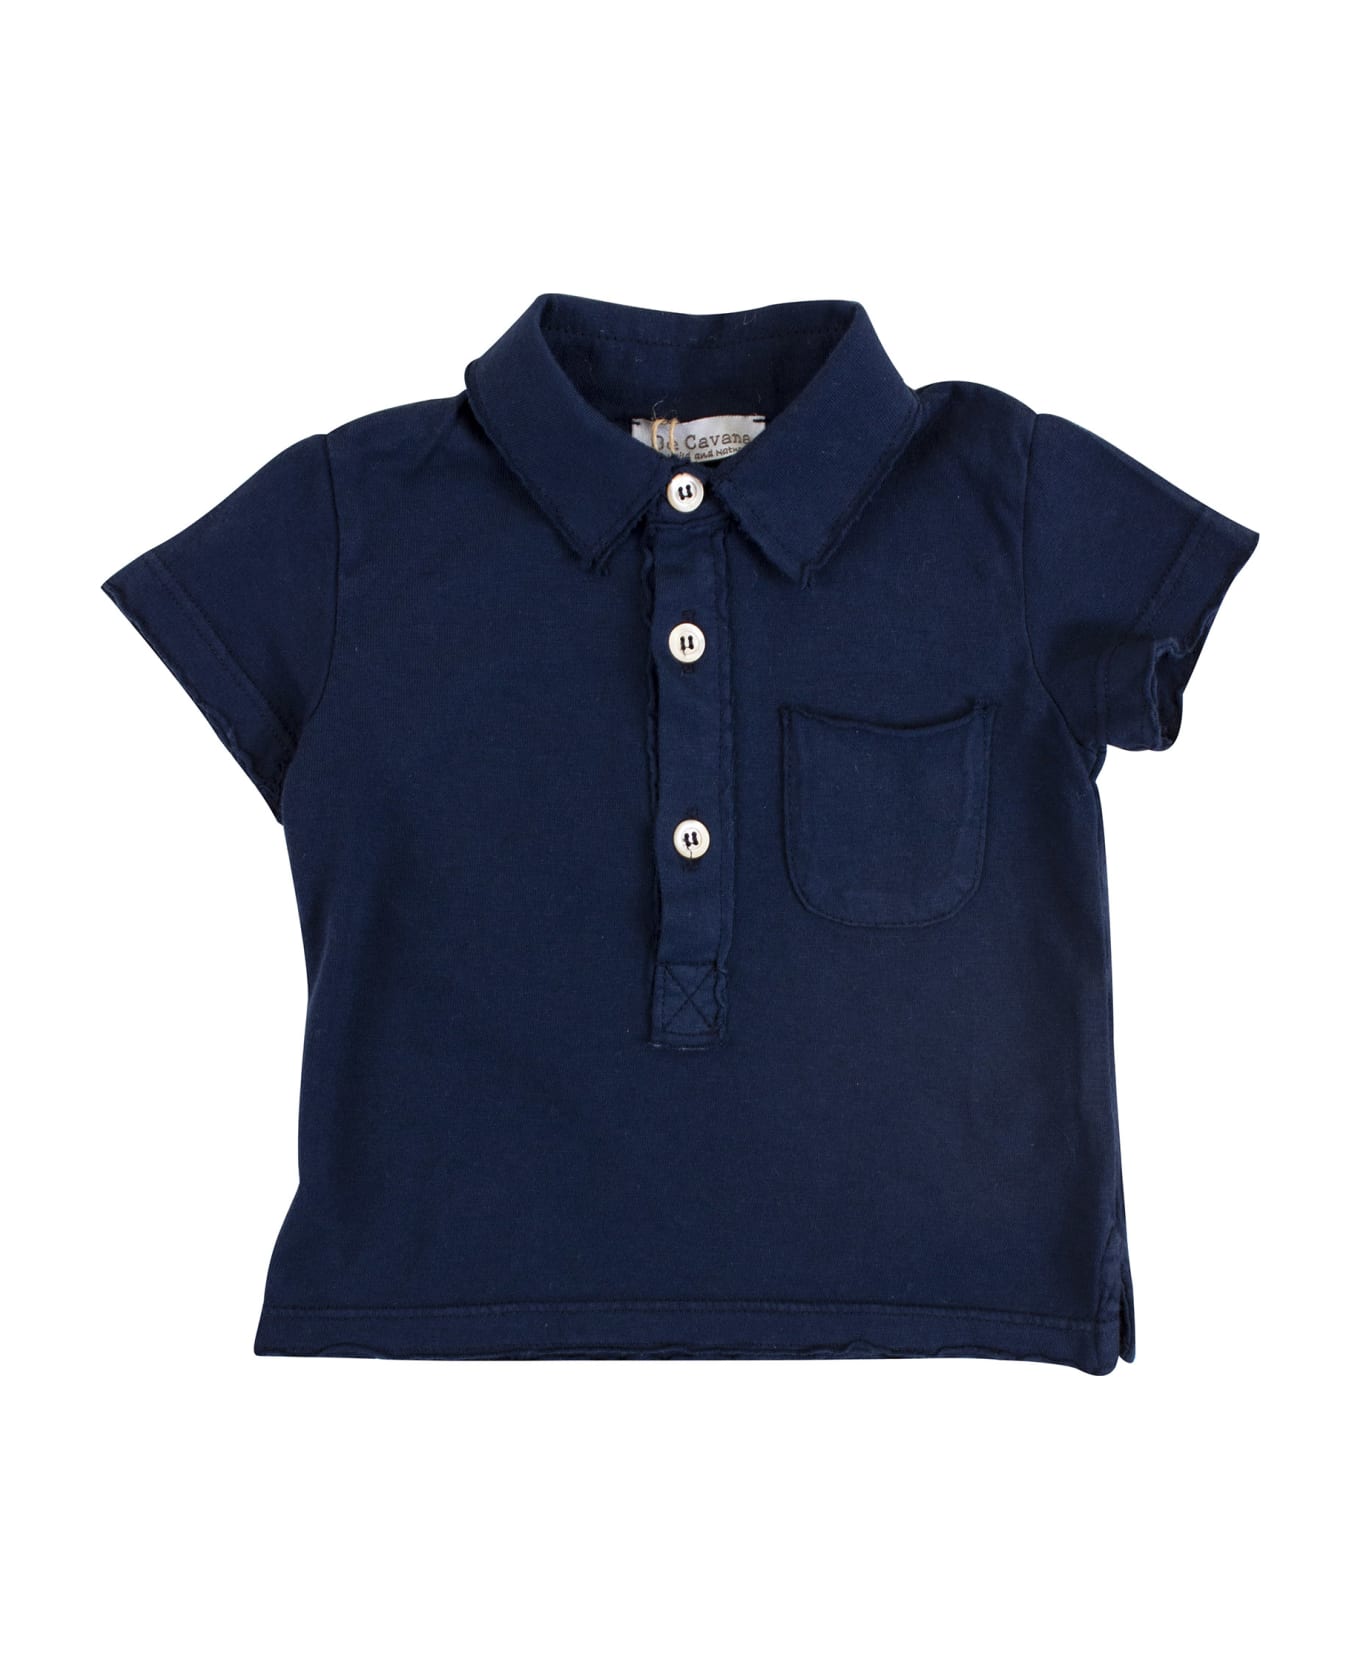 De Cavana Newborn Polo Shirt With Pocket - Blue